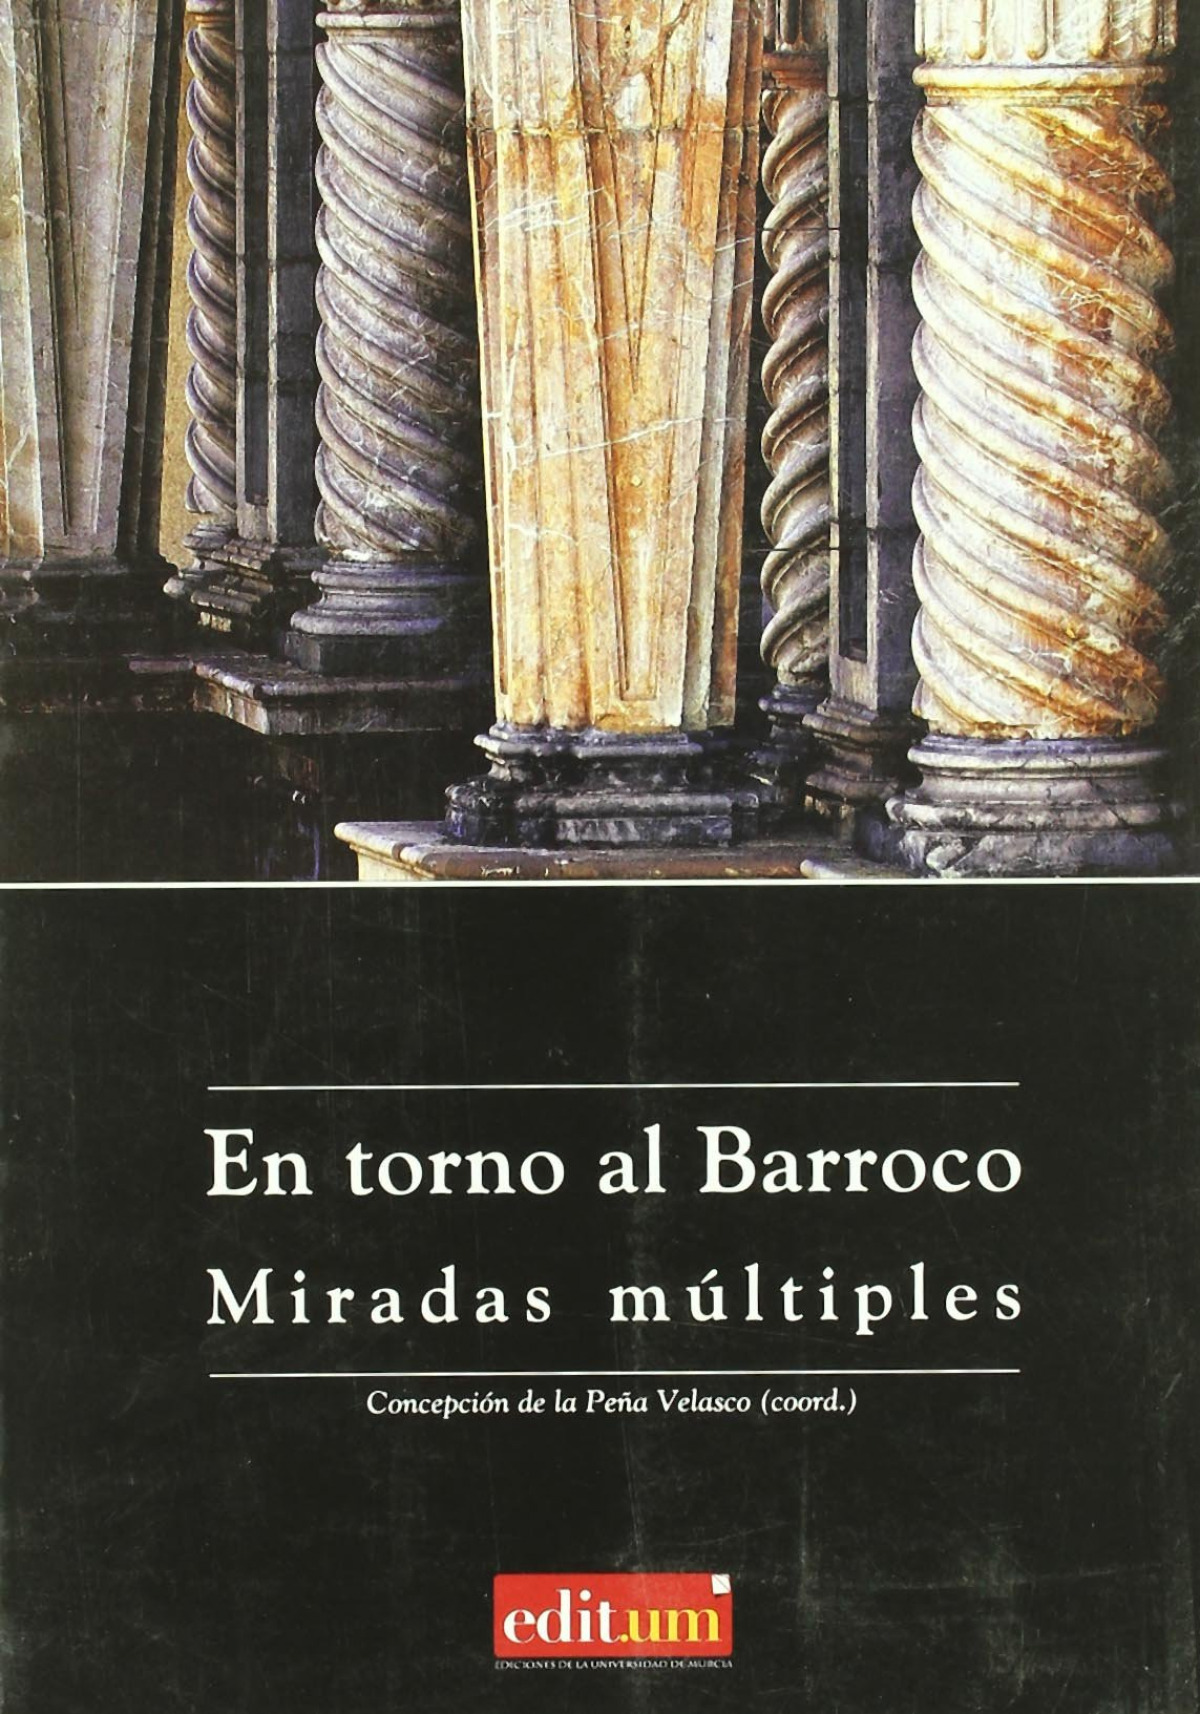 En torno al barroco: miradas múltiples - Peña Velasco, Concepción de la, (coord.)